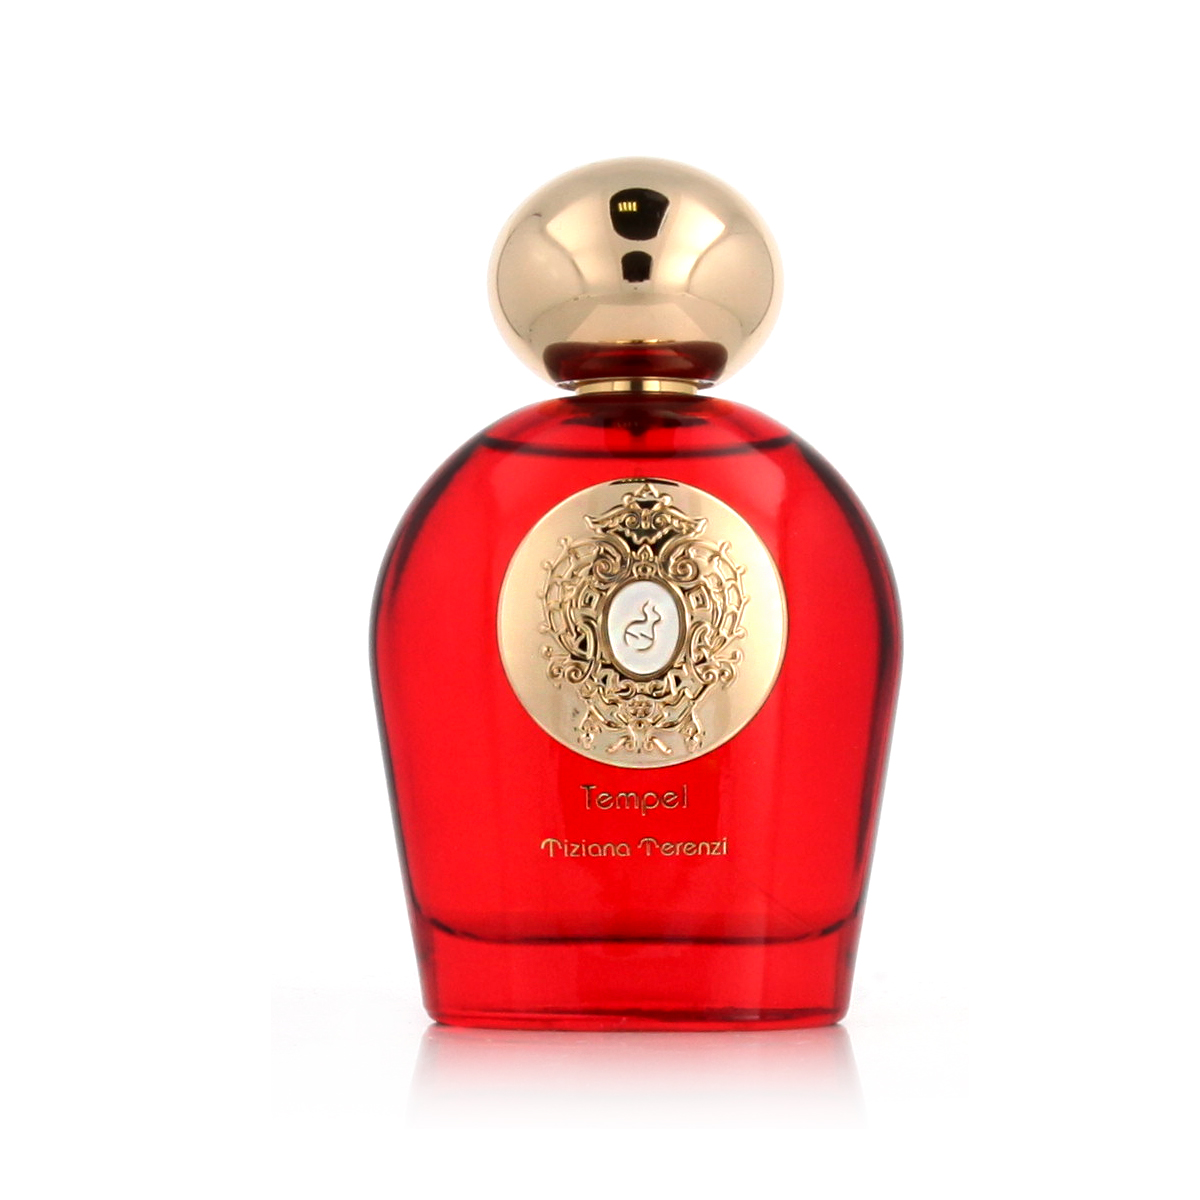 Tiziana Terenzi Tempel 5 ml NIŠINIAI kvepalų mėginukas (atomaizeris) Unisex Parfum